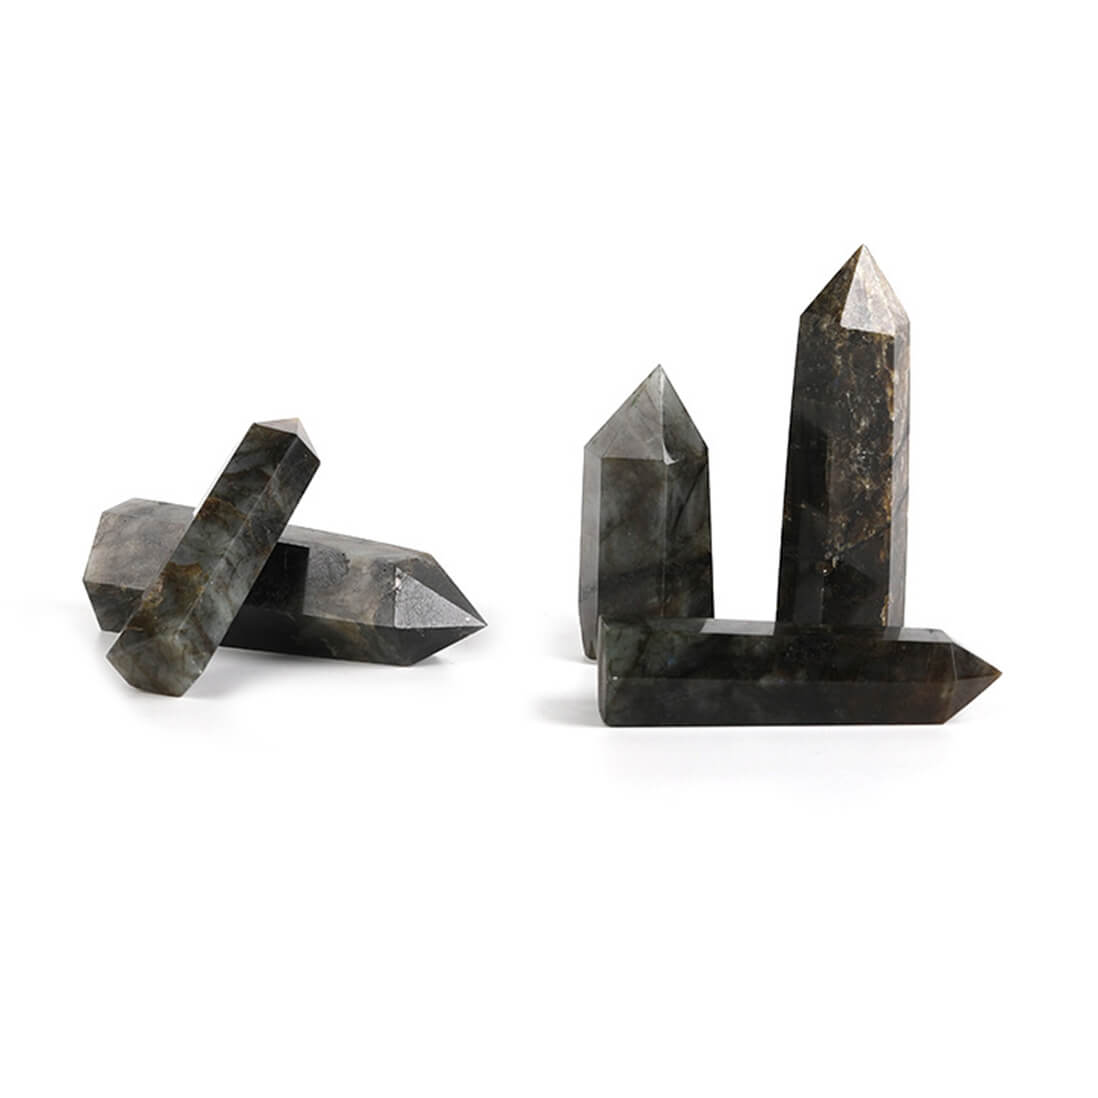 Labradorite Crystal Towers - 5 to 9 cm